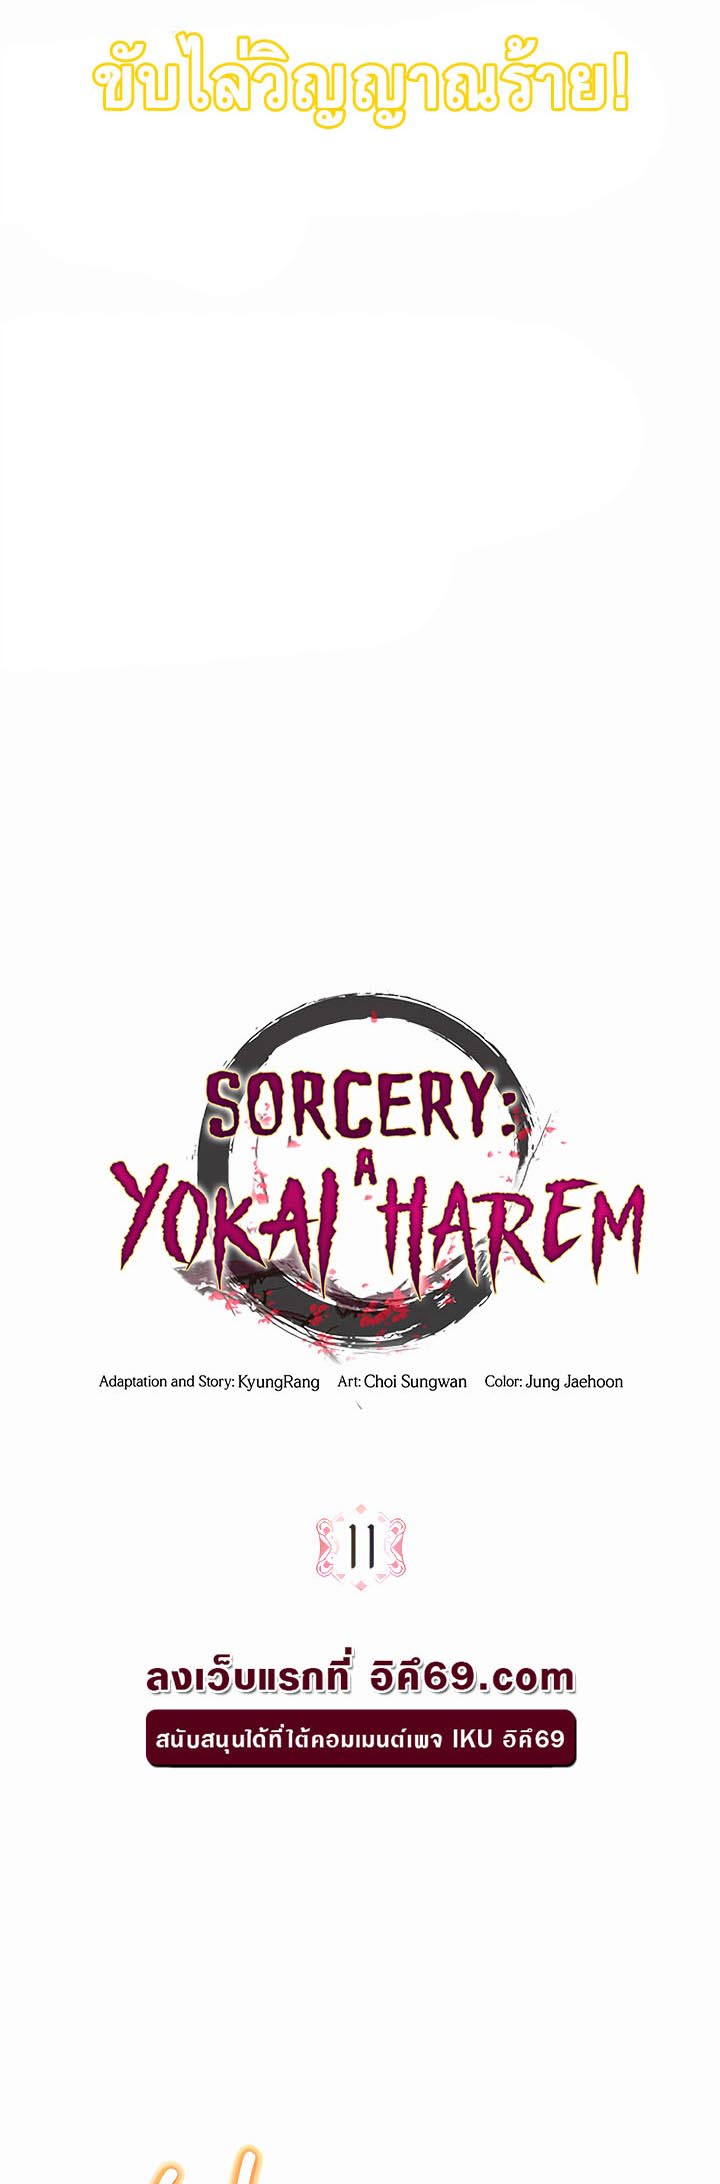 อ่านโดจิน เรื่อง Sorcery A Yokai Harem 11 03